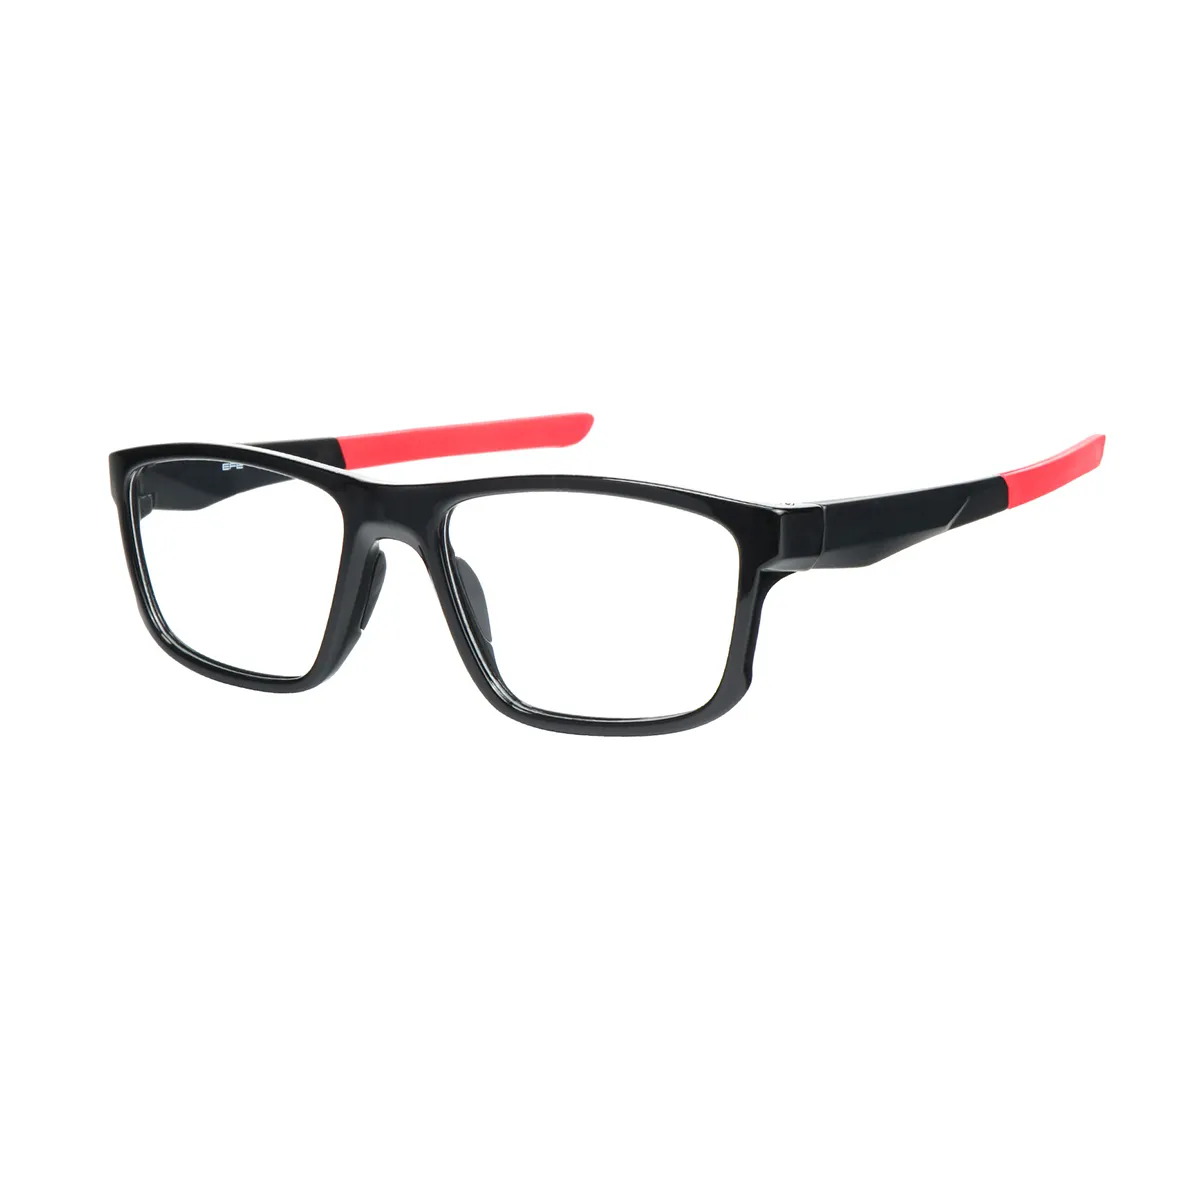 Sports Rectangle Black-Gray Eyeglasses for Men